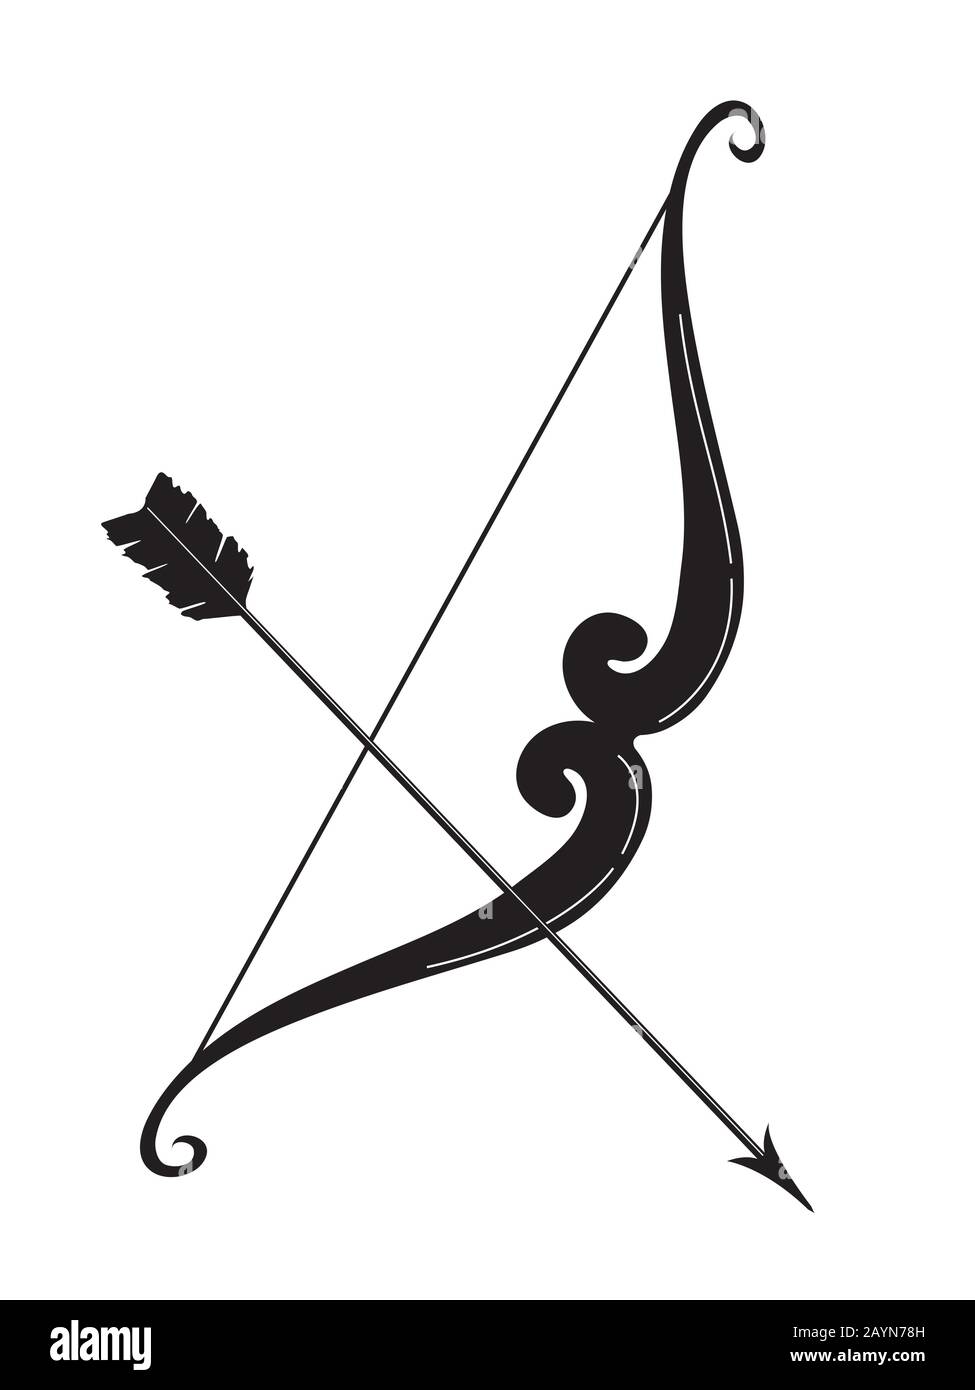 ilustración de arco y flecha Ilustración del Vector